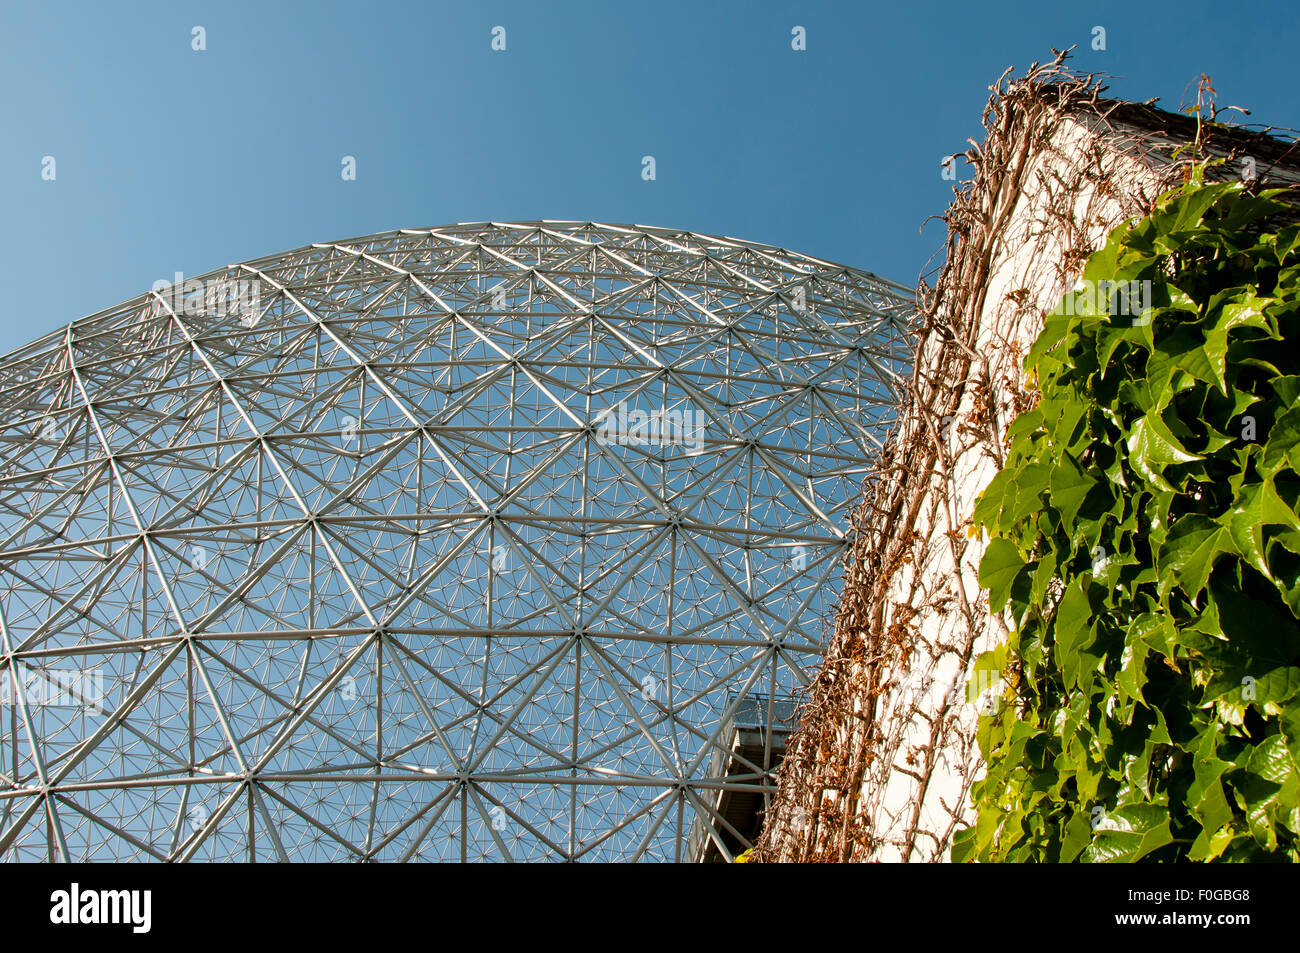 Biosphere - Montreal - Canada Stock Photo